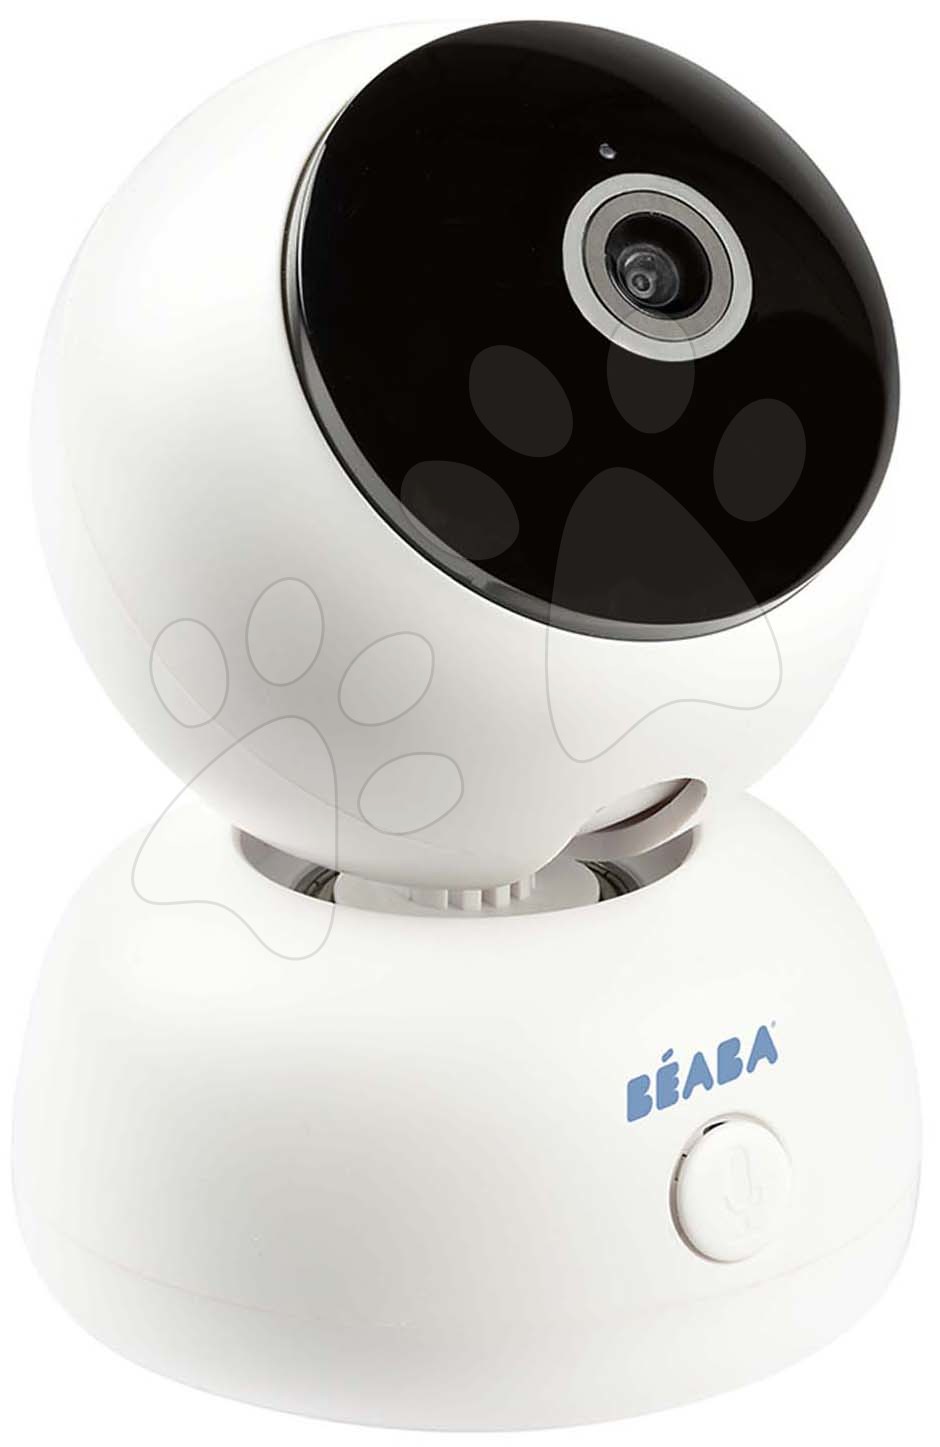 Hračky pro miminka - Elektronická chůva Video Baby Monitor Zen Premium Beaba 2v1 s 360 stupňovou rotací 1080 FULL HD s infračerveným nočním viděním